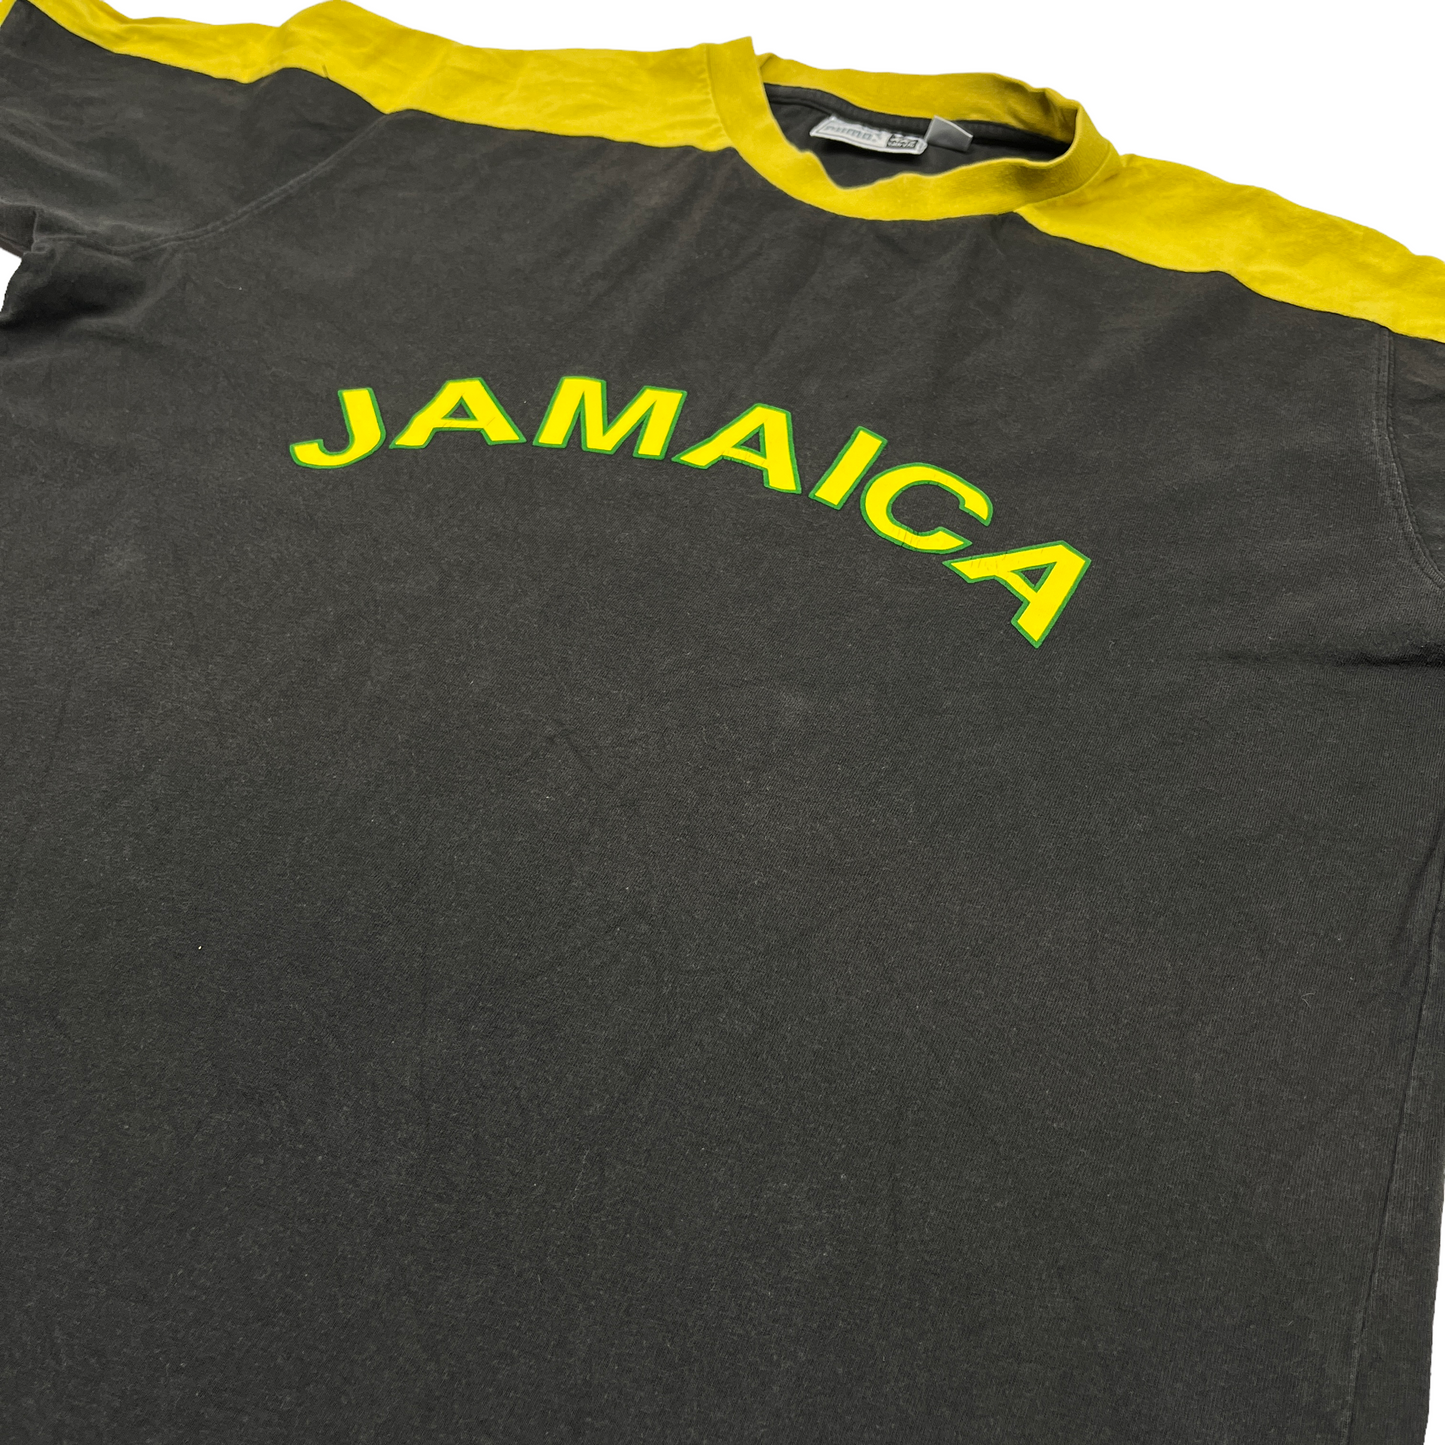 01185 Puma 90s Jamaica Tshirt